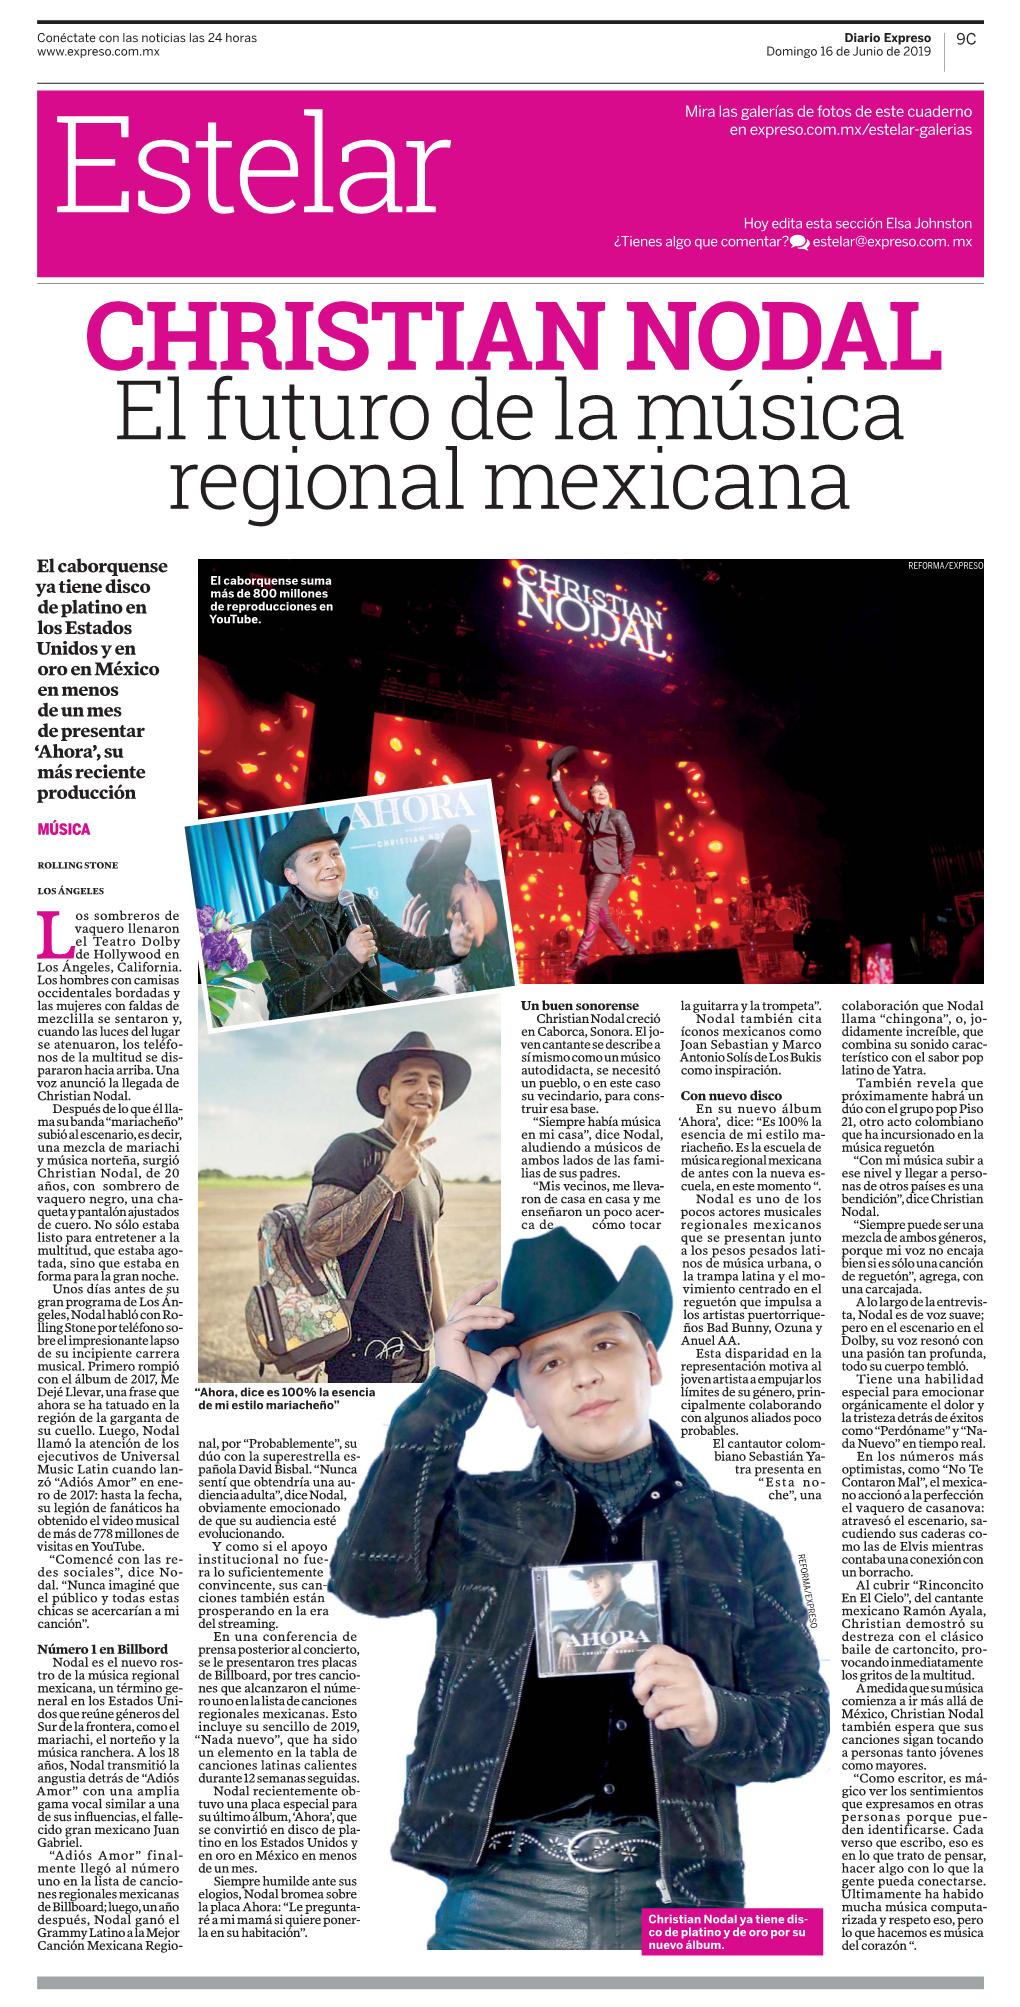 CHRISTIAN NODAL El Futuro De La Música Regional Mexicana